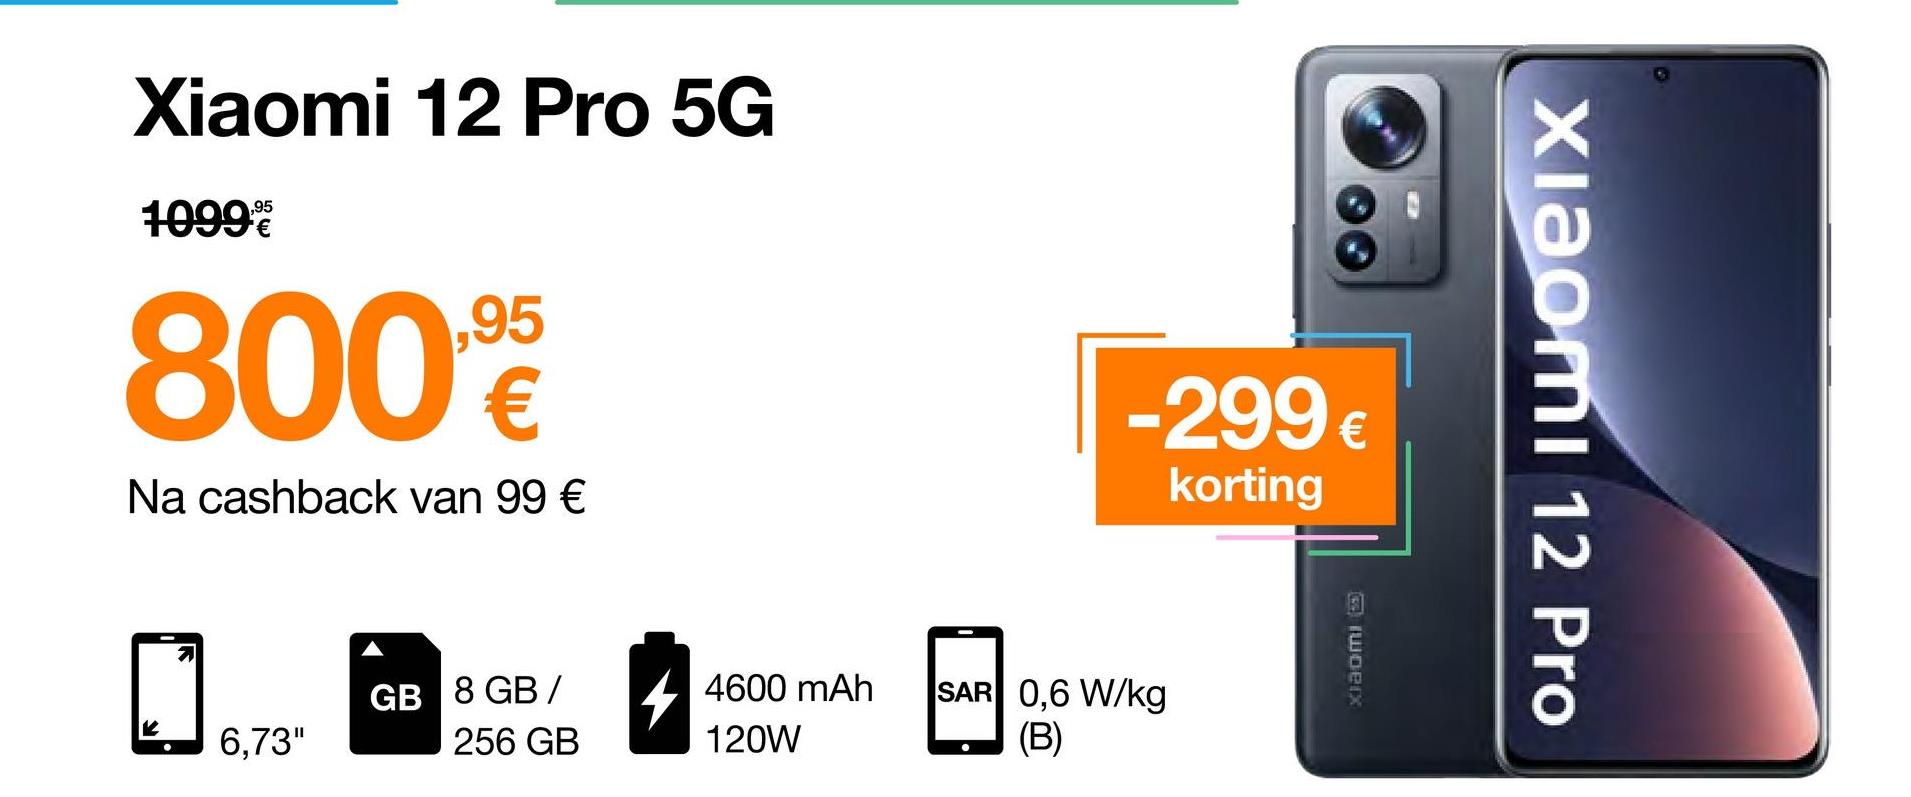 Xiaomi 12 Pro 5G
1099%
8009
Na cashback van 99 €
2
6,73"
GB 8 GB /
256 GB
4600 mAh
120W
-299 €
korting
SAR 0,6 W/kg
(B)
woerx
Xiaomi 12 Pro